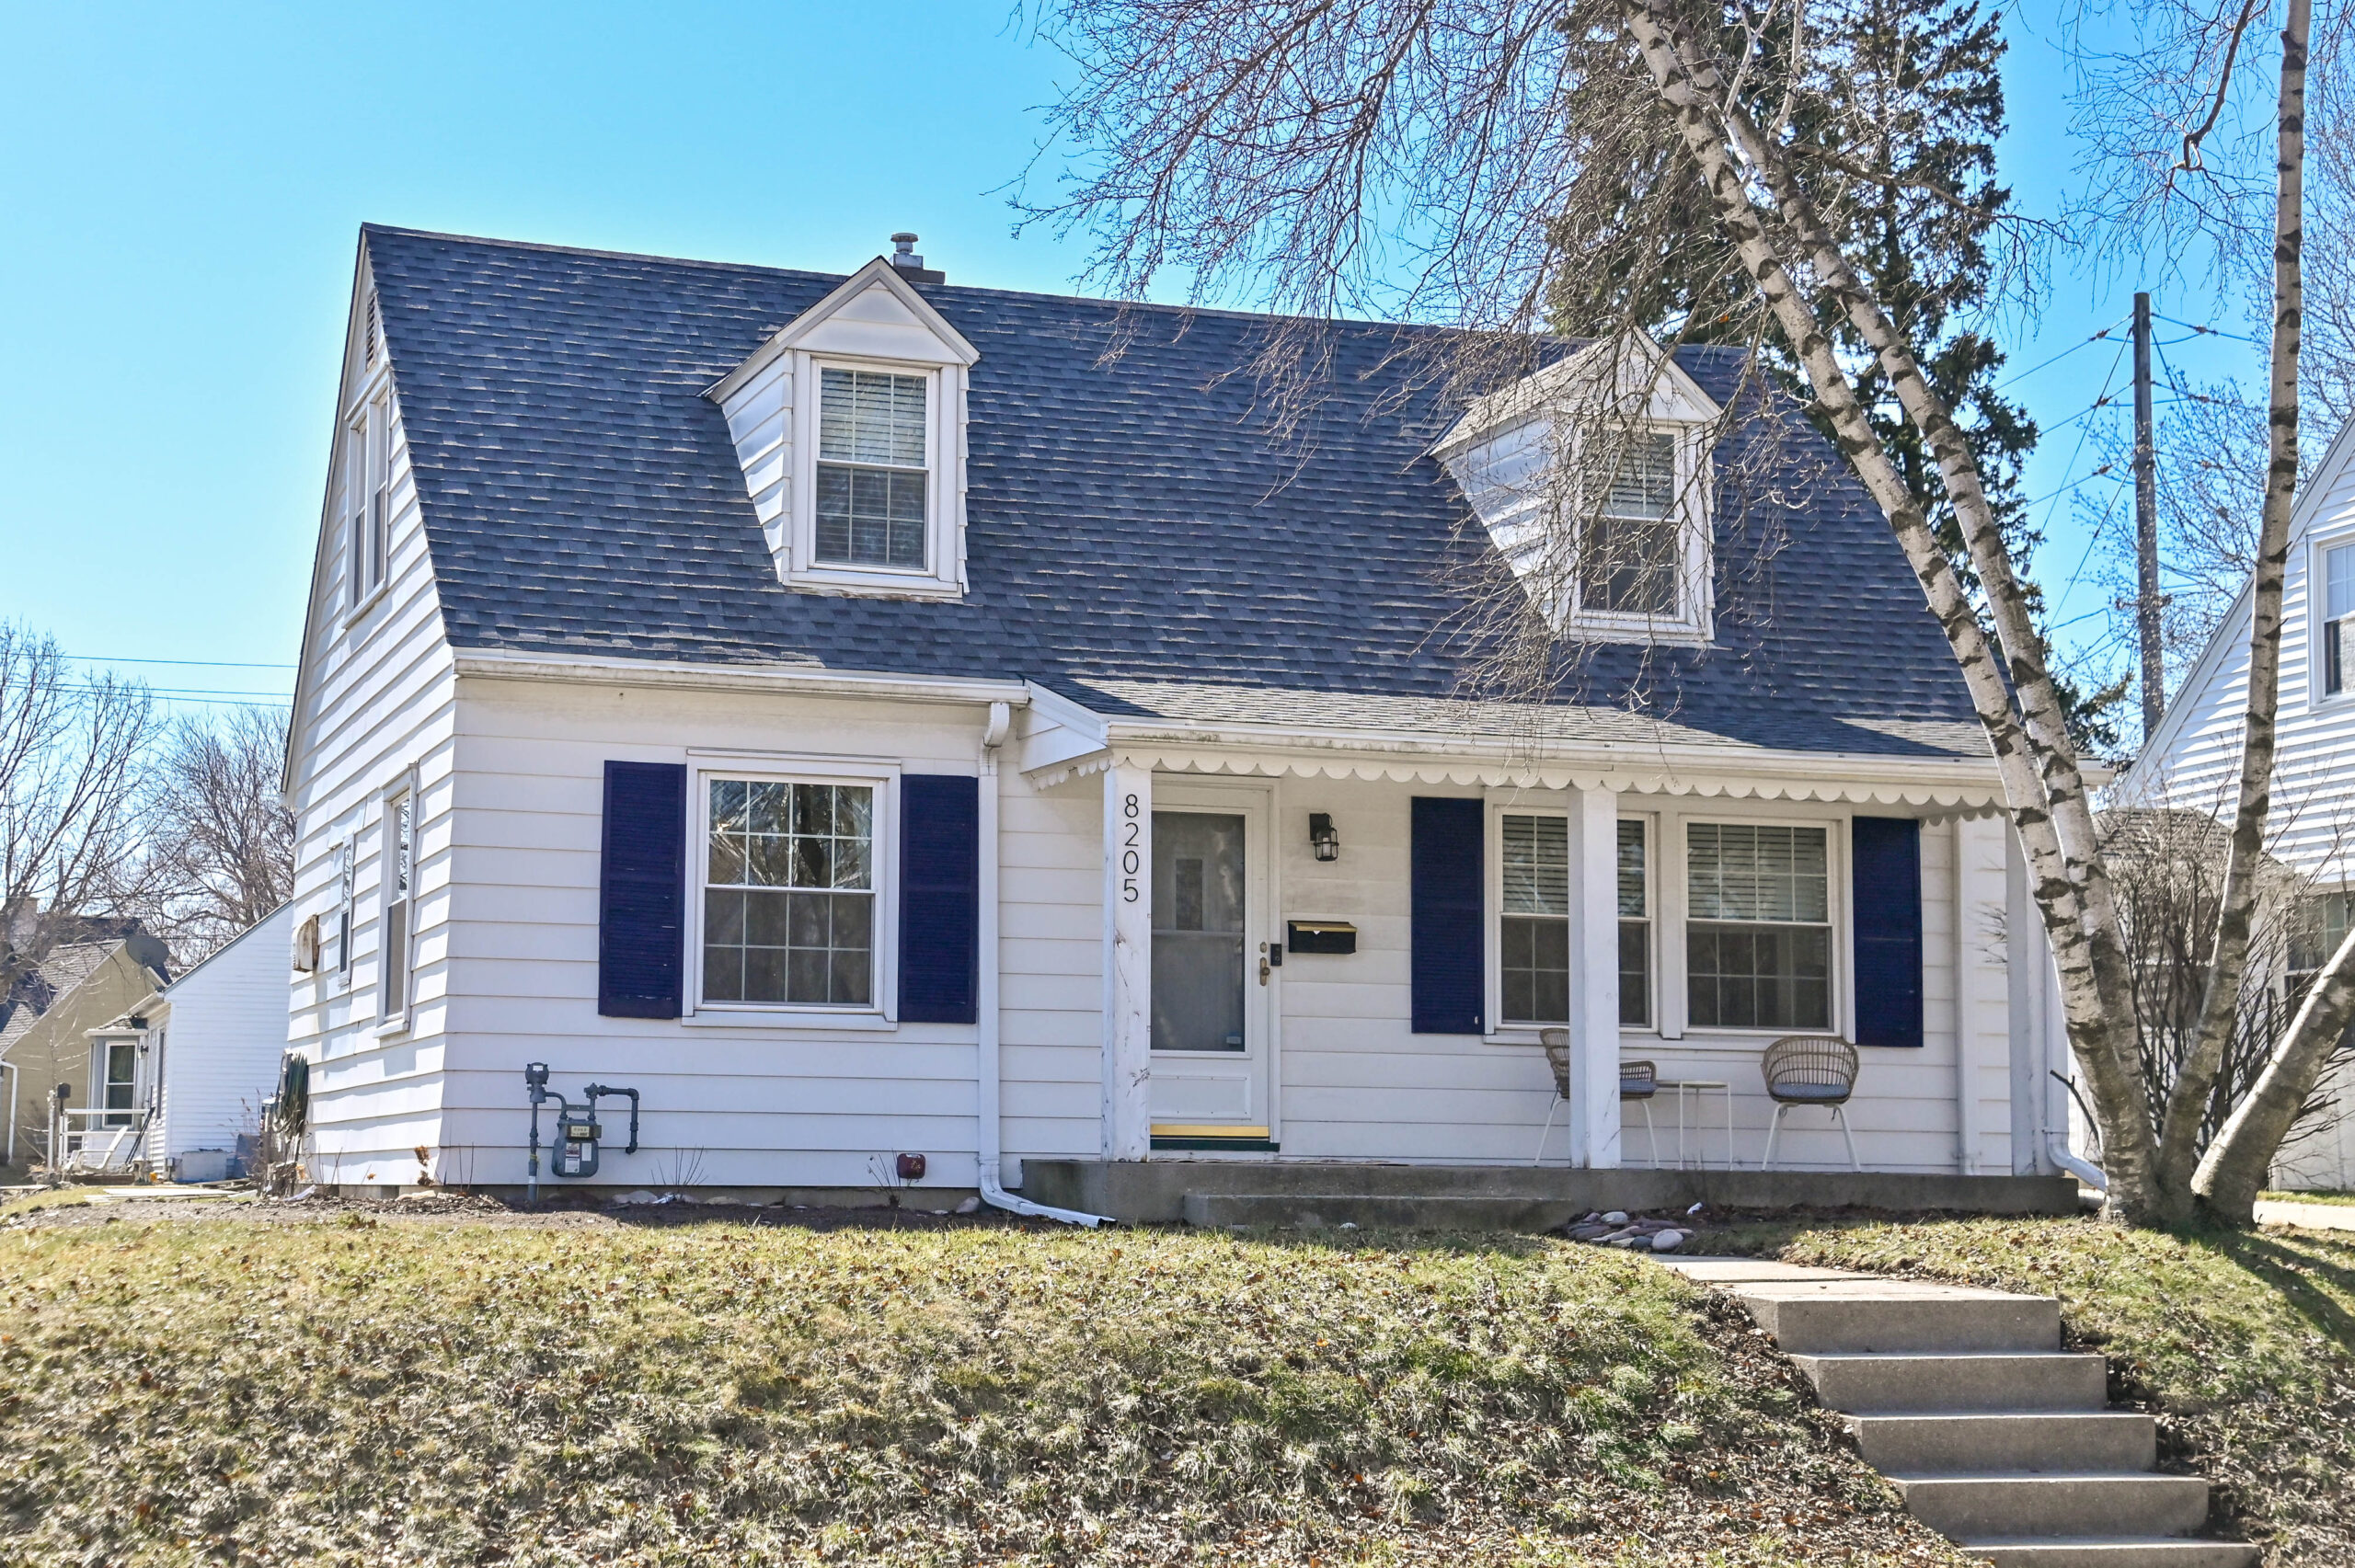  Home for Sale - 8205 W. Honey Creek Pkwy. Milwaukee, WI 53214-1466